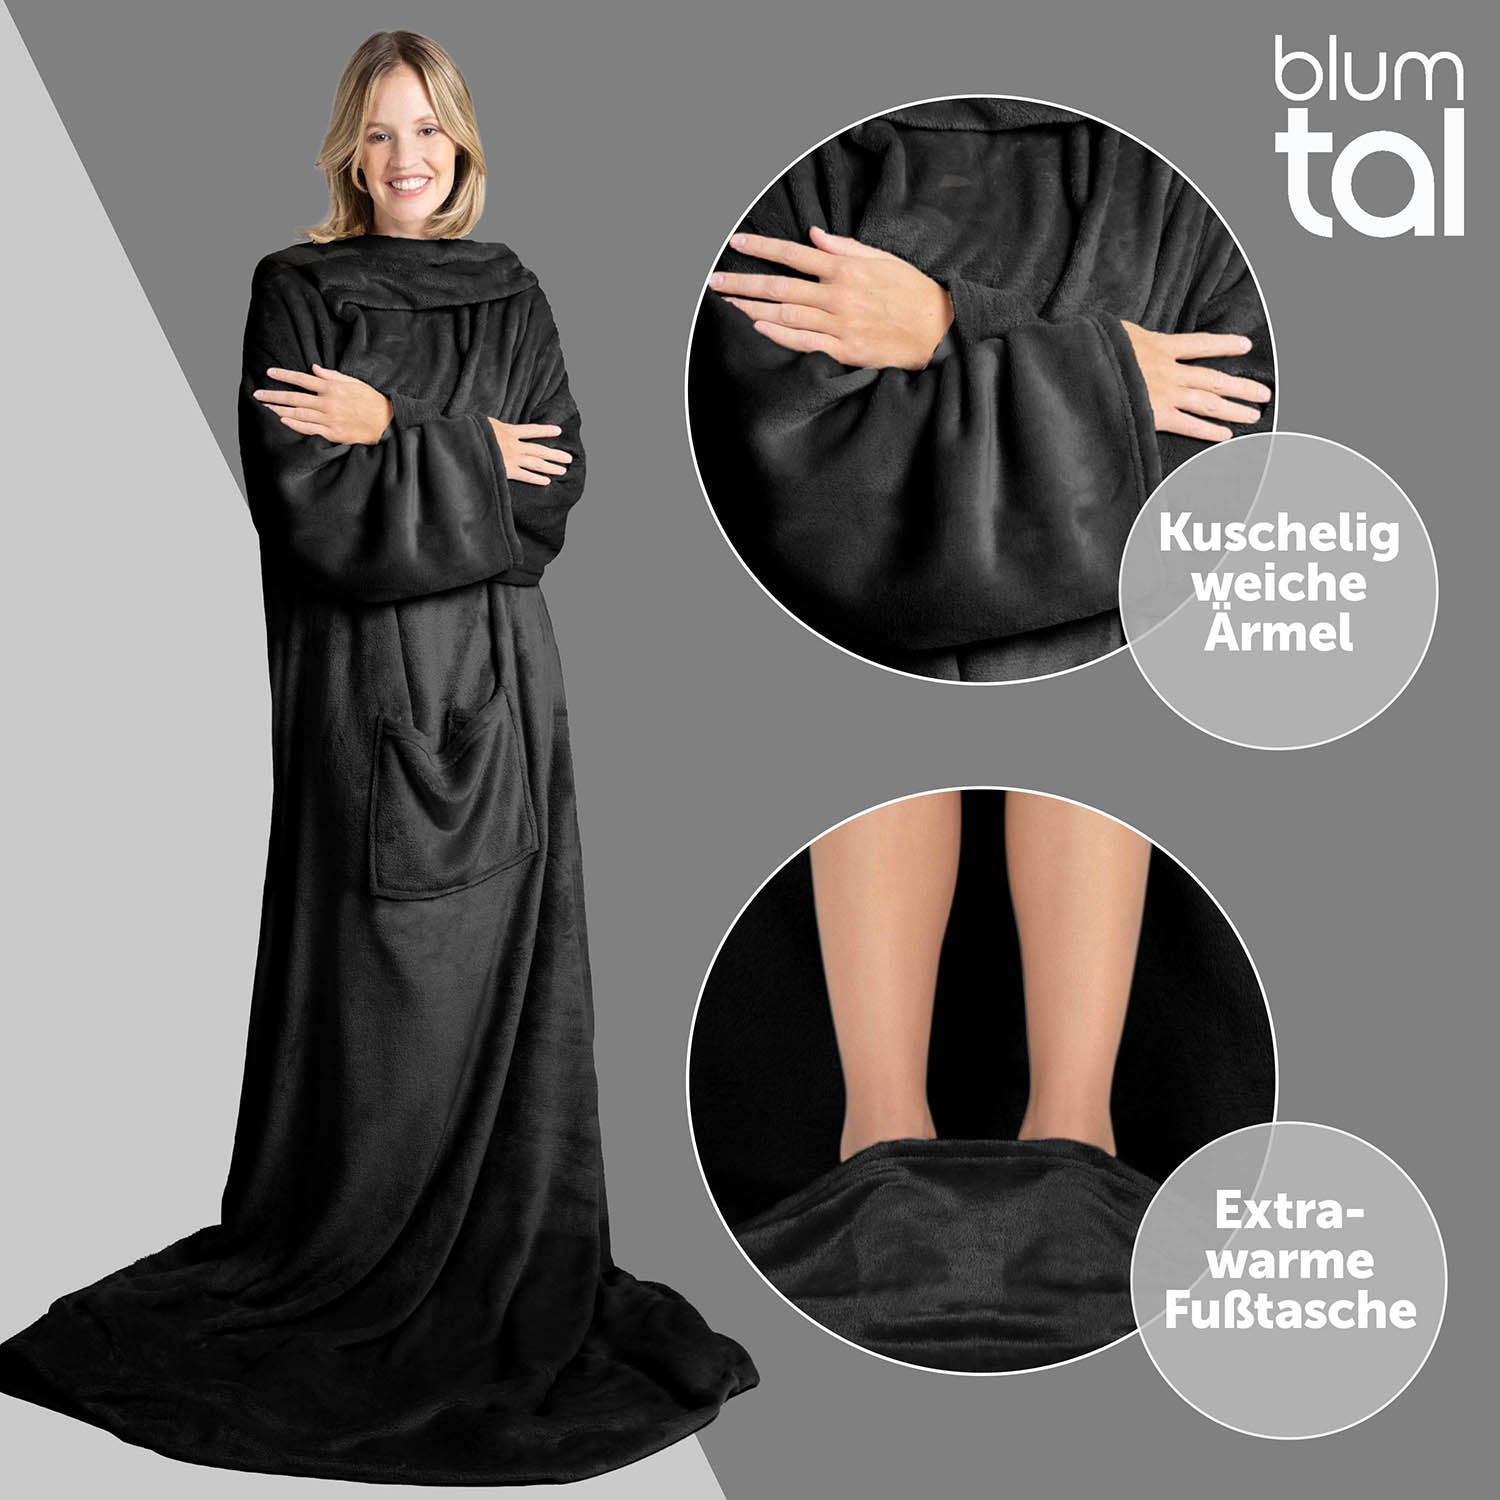 Frau in schwarz flauschigem Kleidungsstück vor grauem Hintergrund mit Nahaufnahme der weichen Ärmel und der extrawarmen Fußtasche in Kreisen hervorgehoben.